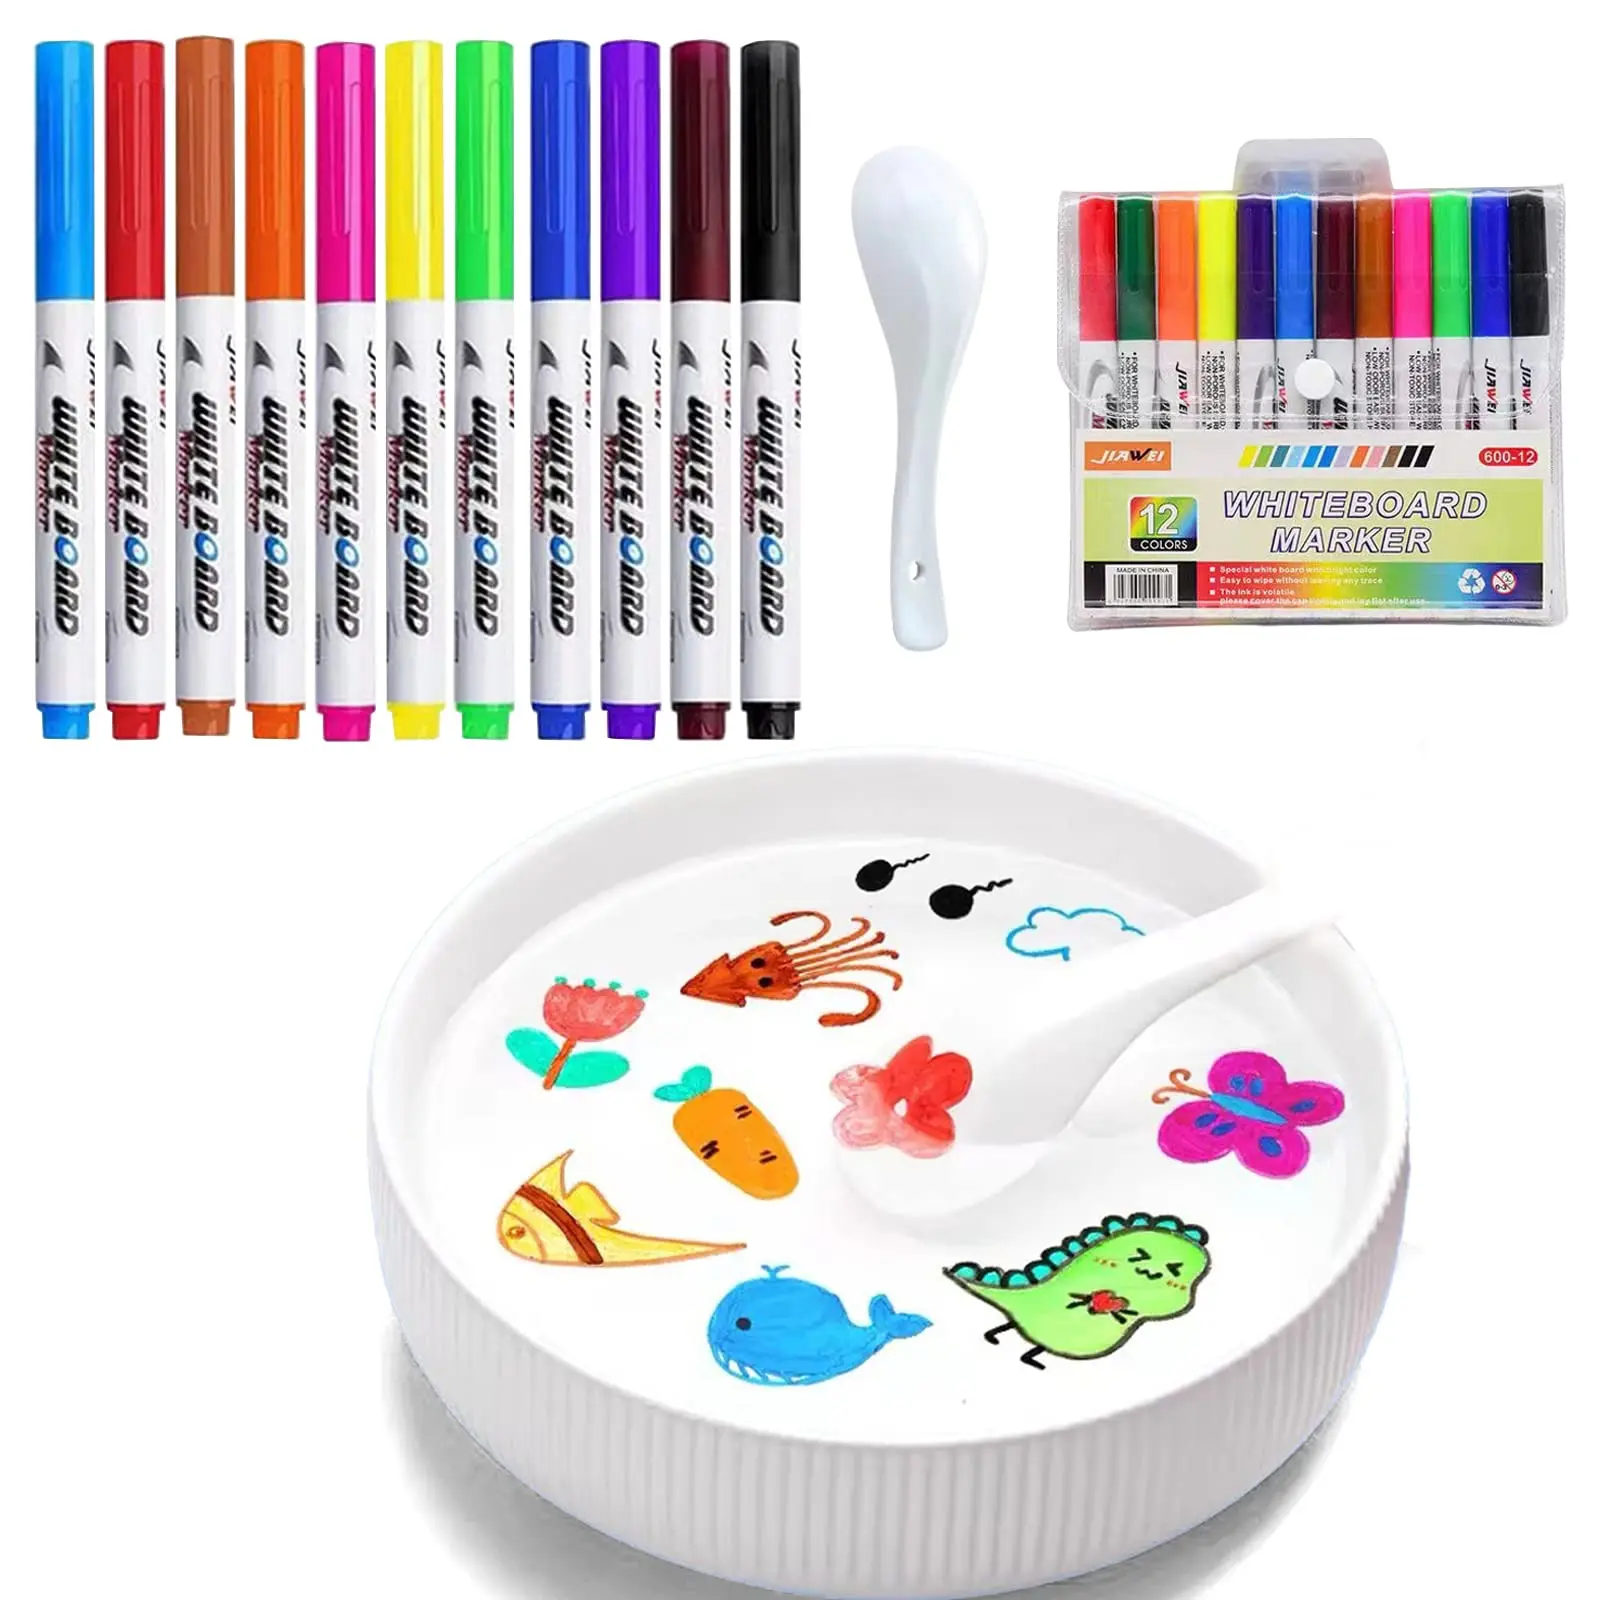 Stylo magique de peinture à l'eau 4/8/12 couleurs, stylo à encre flottant sûr avec cuillère, marqueur pour tableau blanc effaçable, cadeau incroyable pour enfants